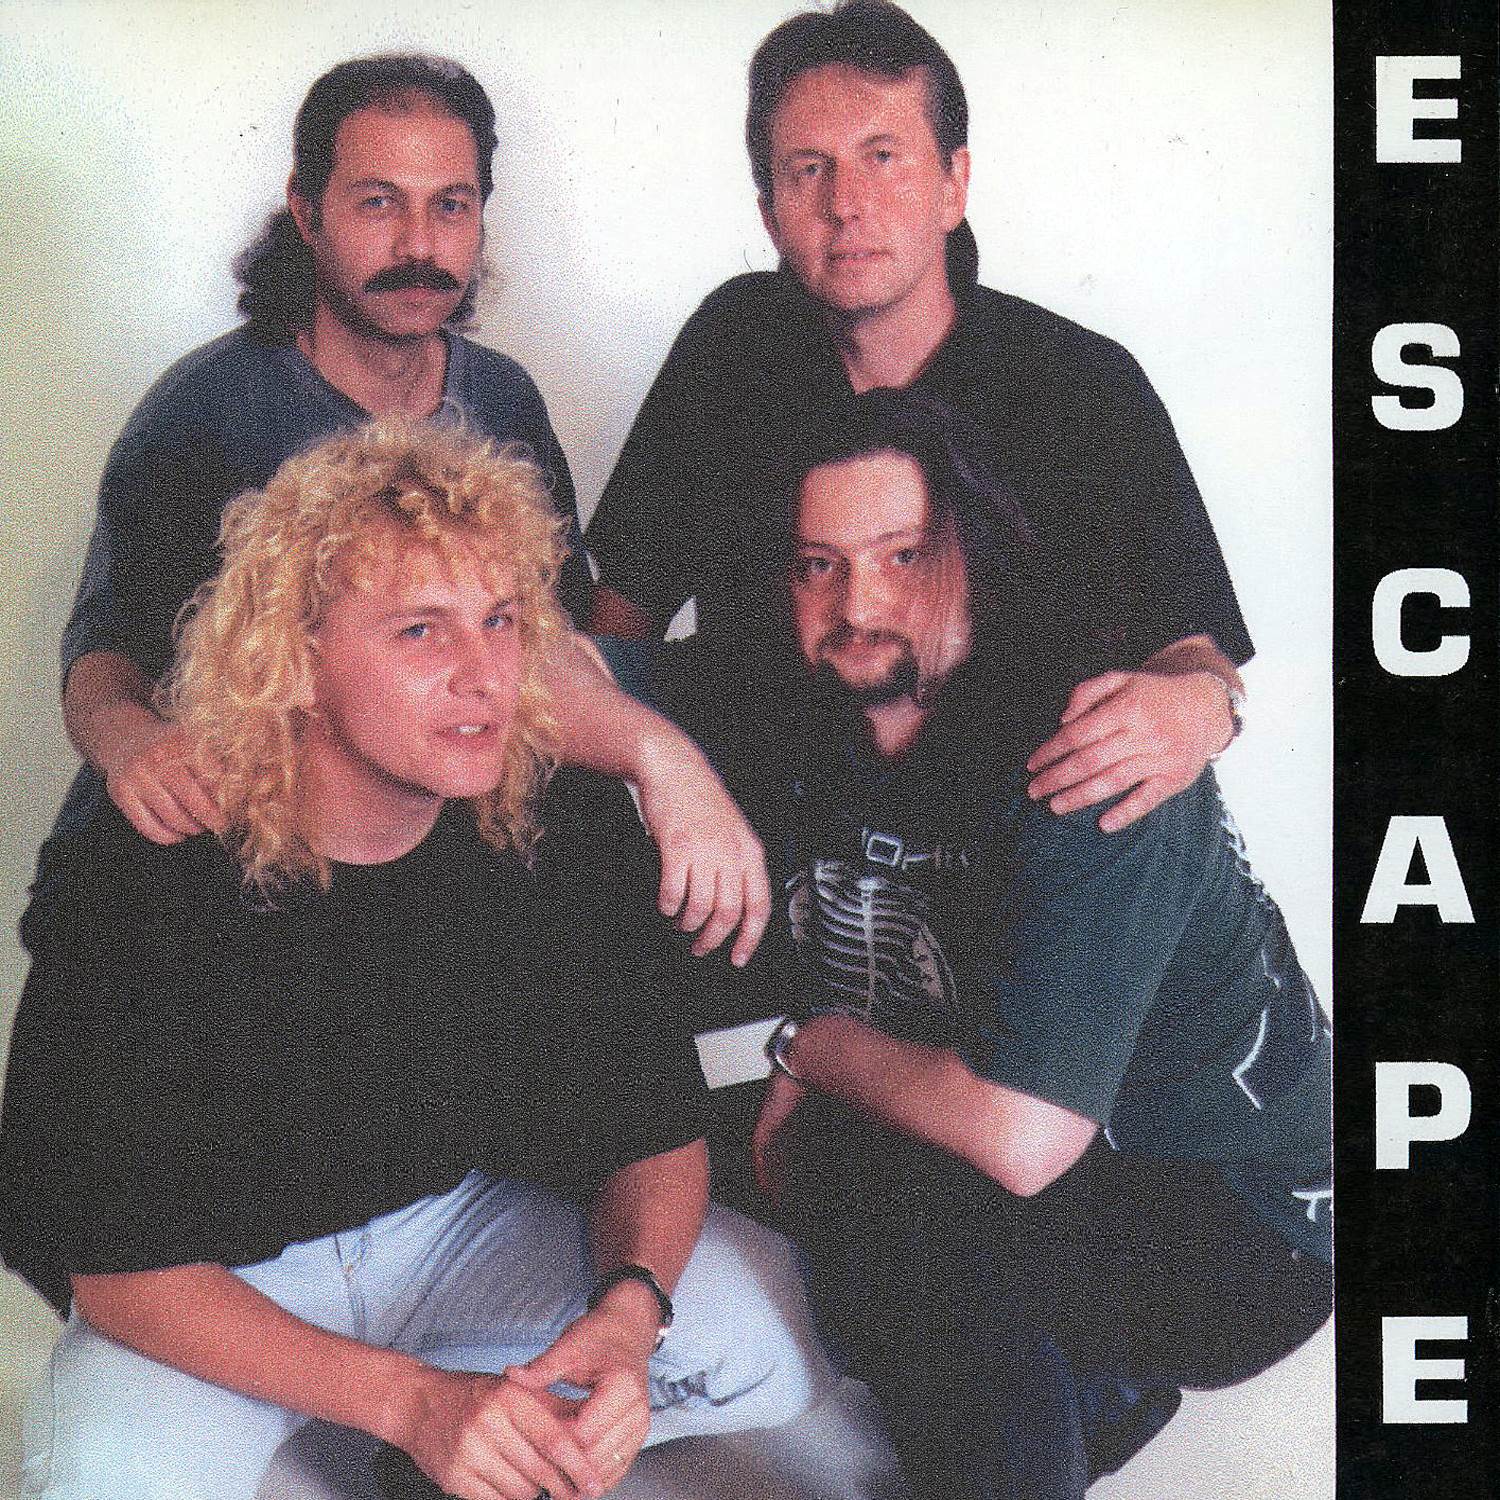 Escape - Šance zhasíná